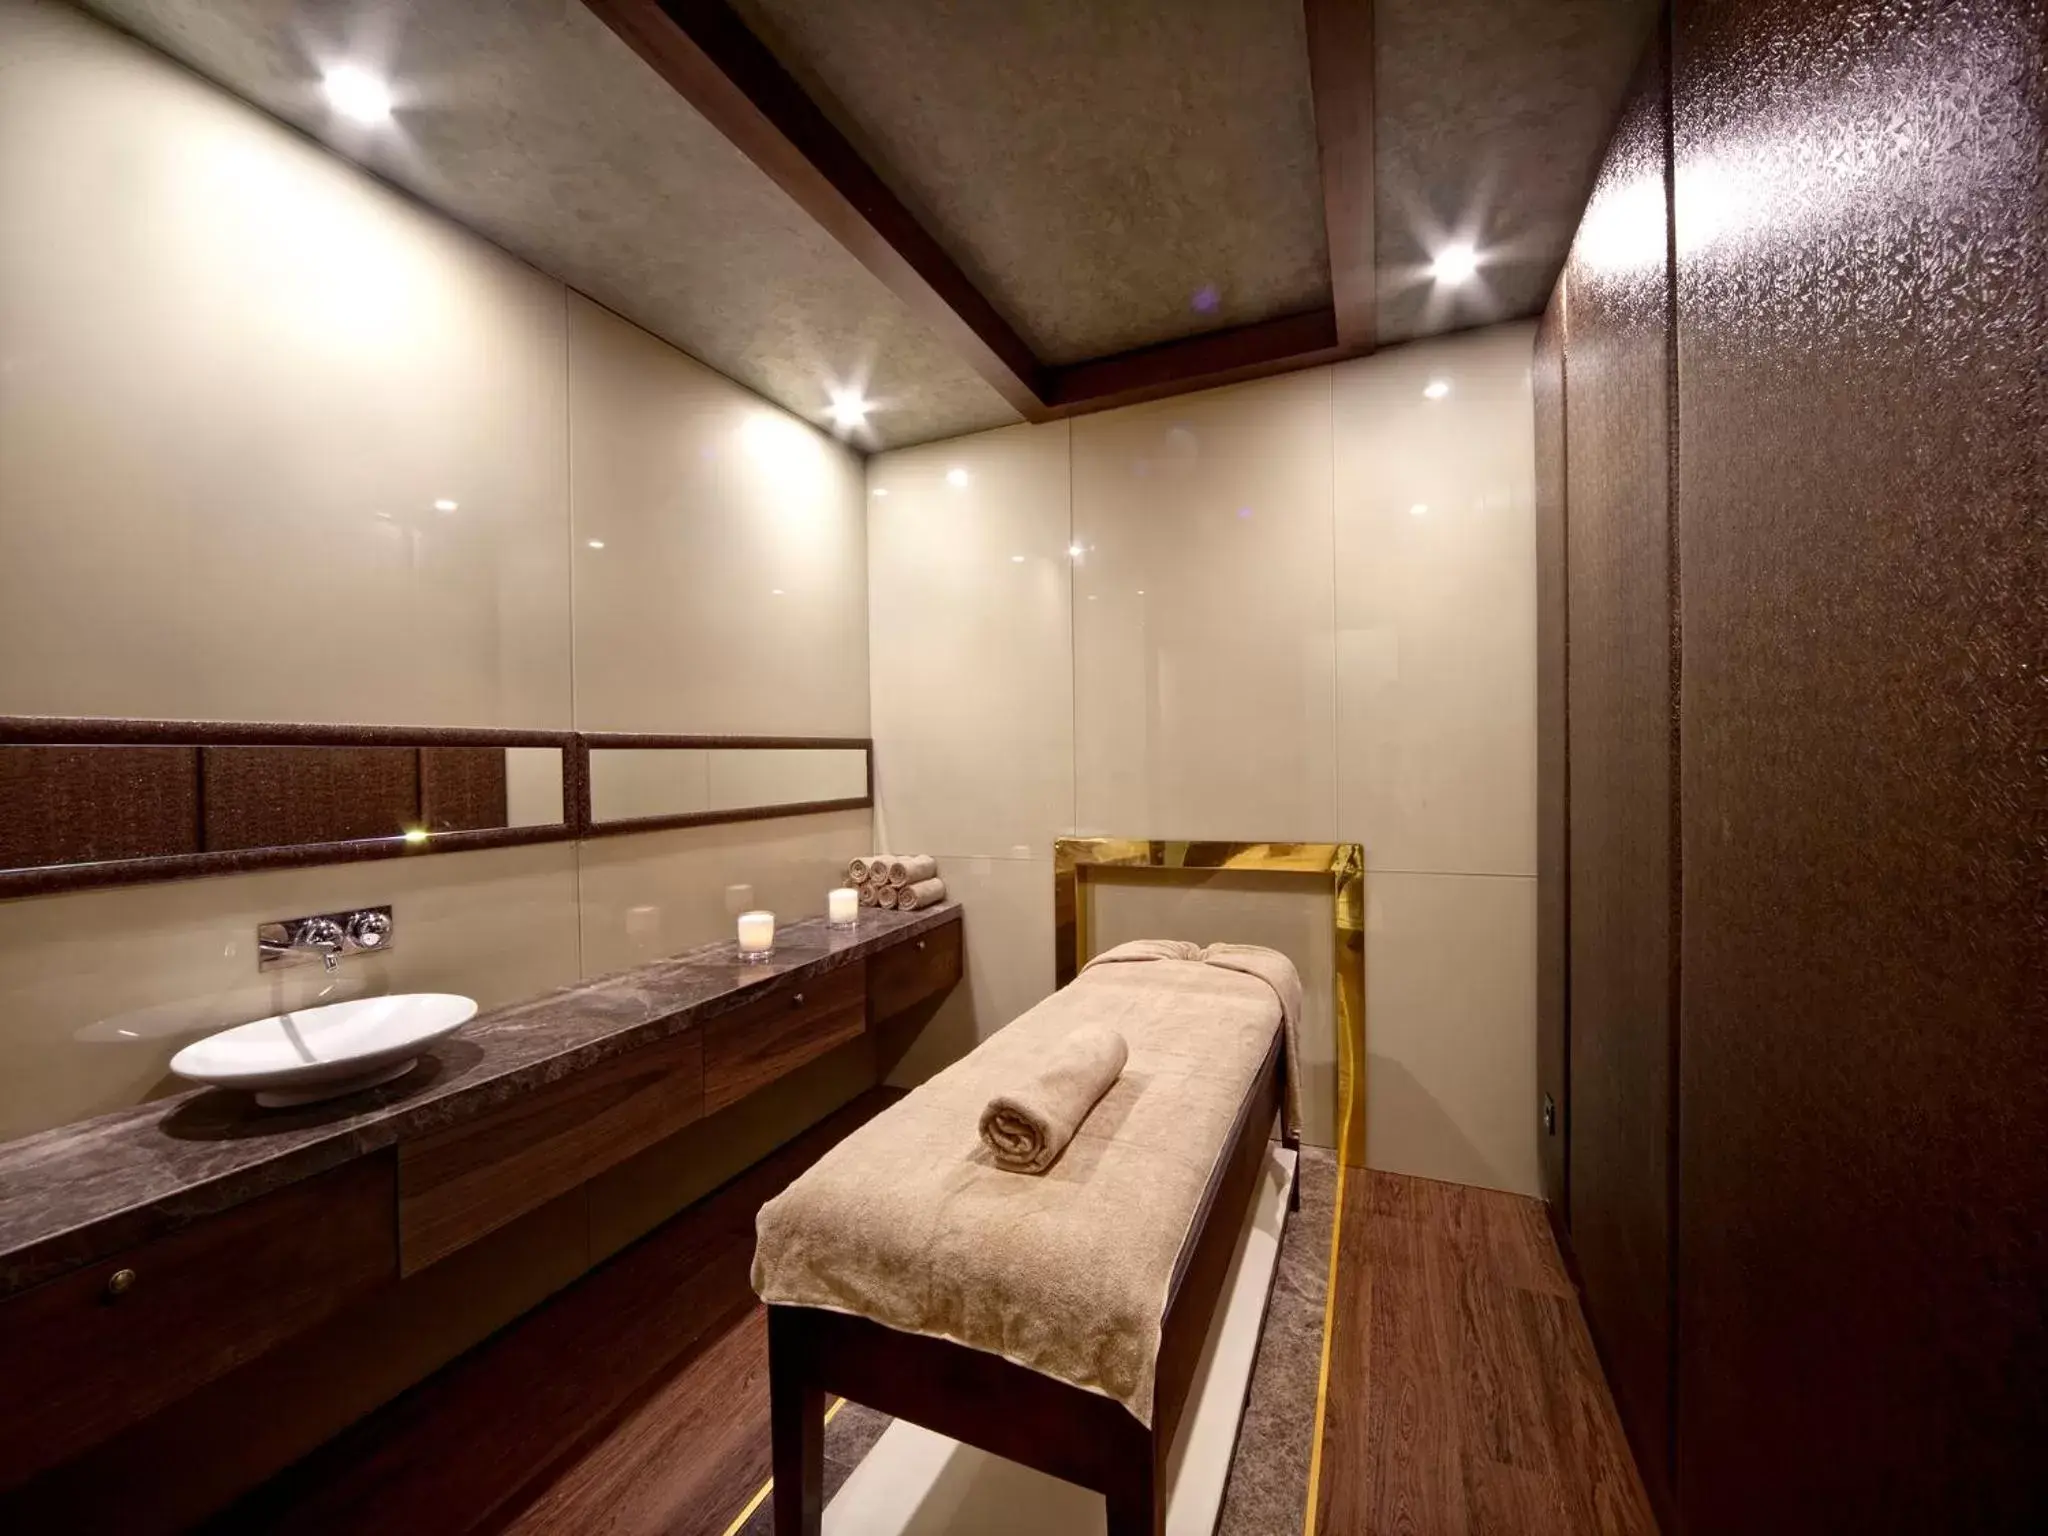 Spa and wellness centre/facilities, Bathroom in Grand Hotel de Pera